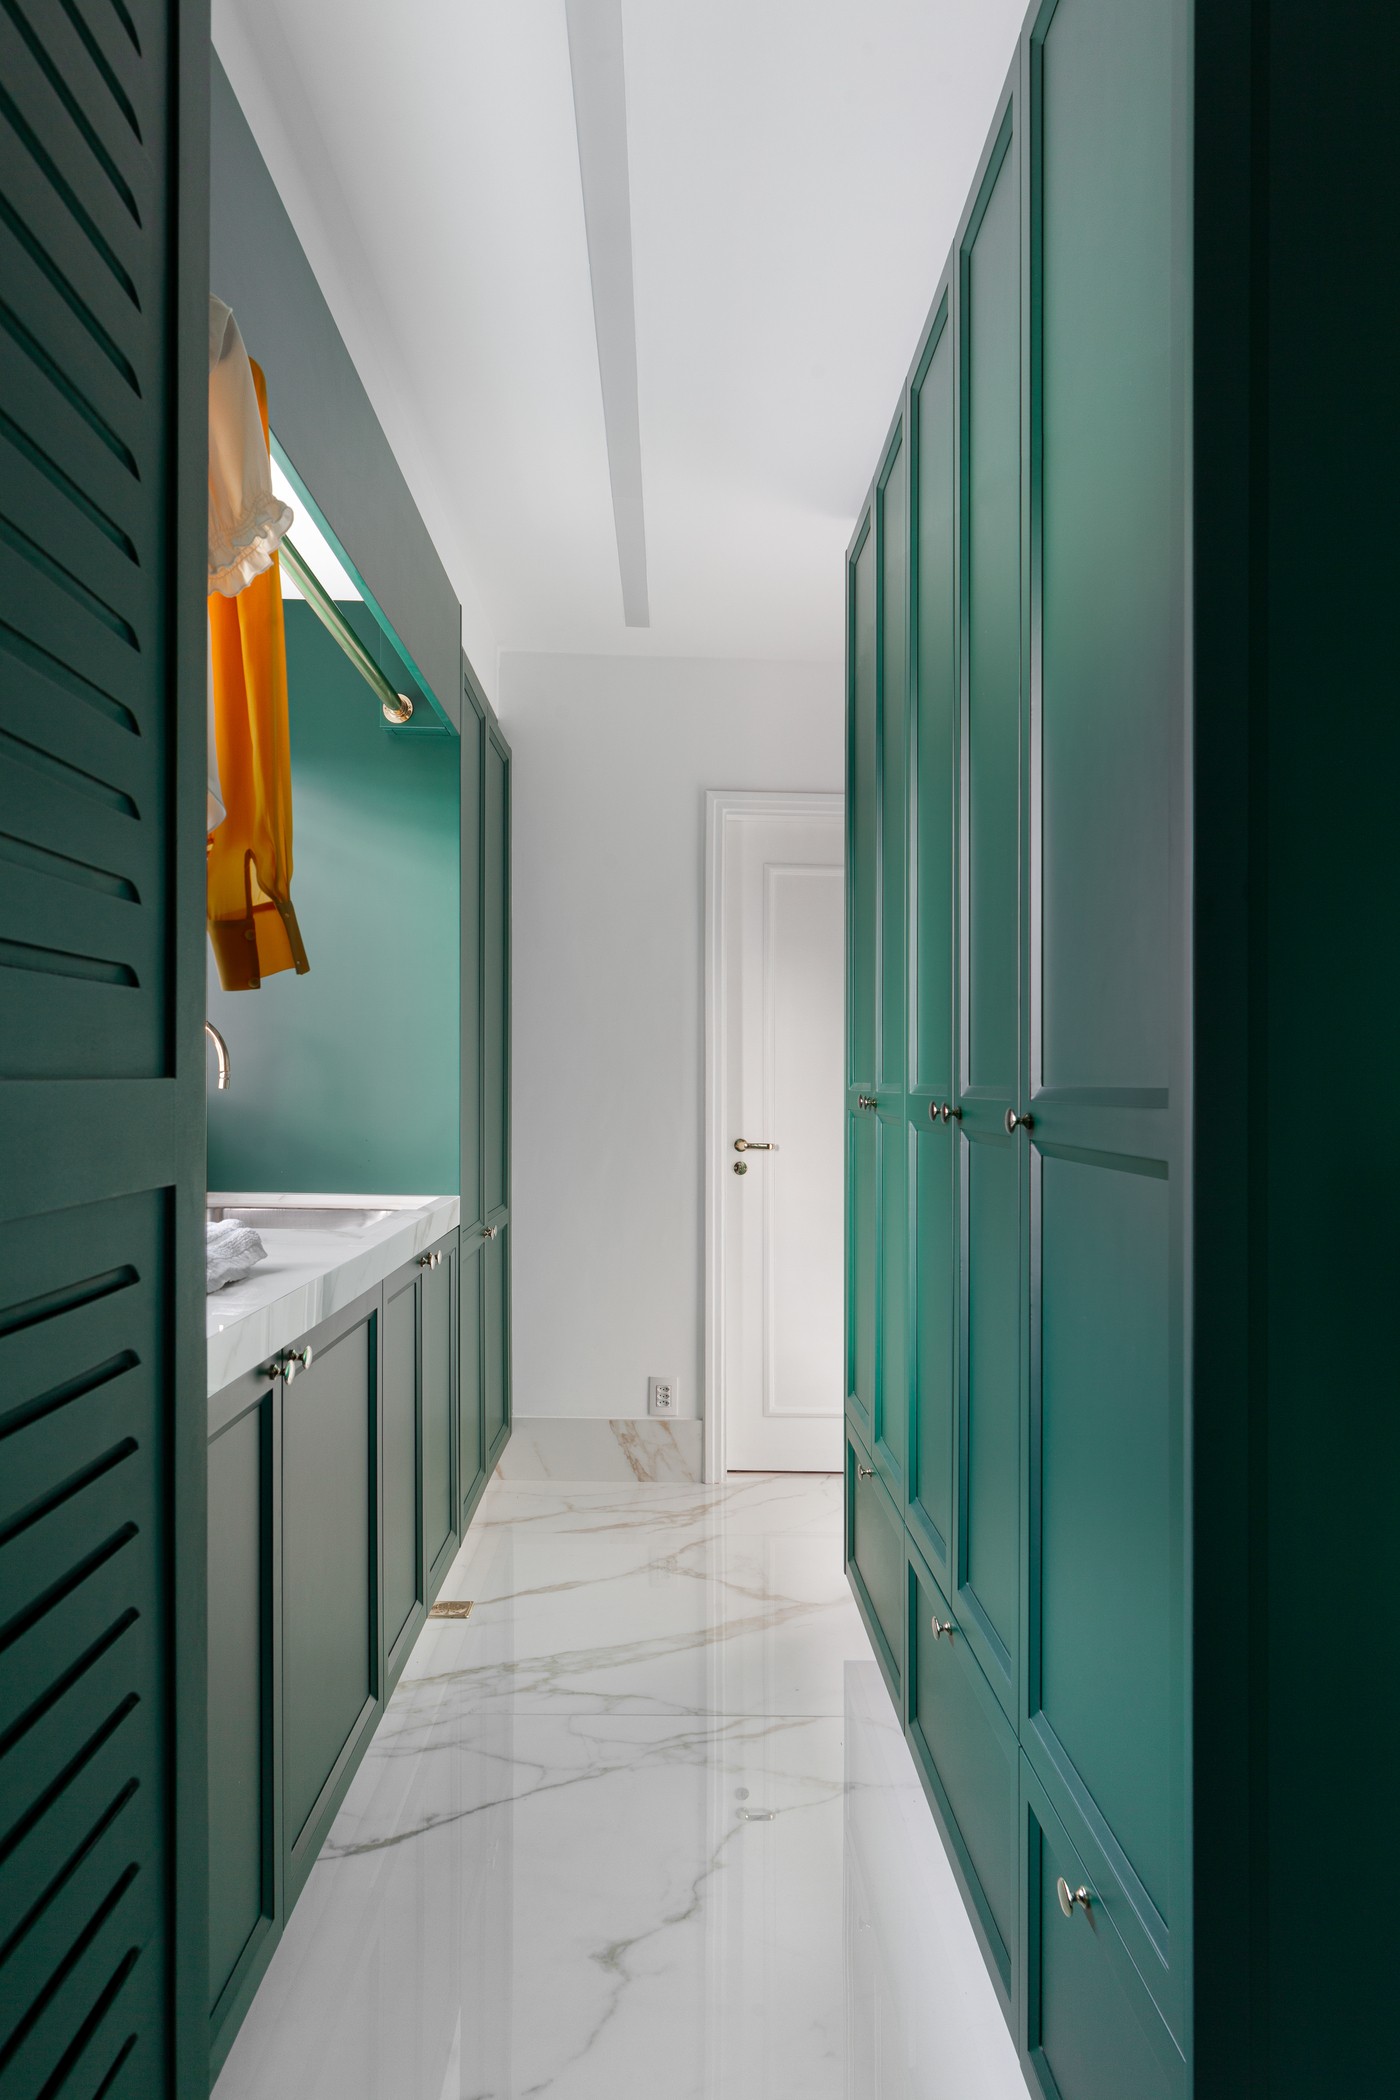 Décor do dia: cozinha integrada à lavanderia tem marcenaria verde como protagonista (Foto: Fellipe Lima)